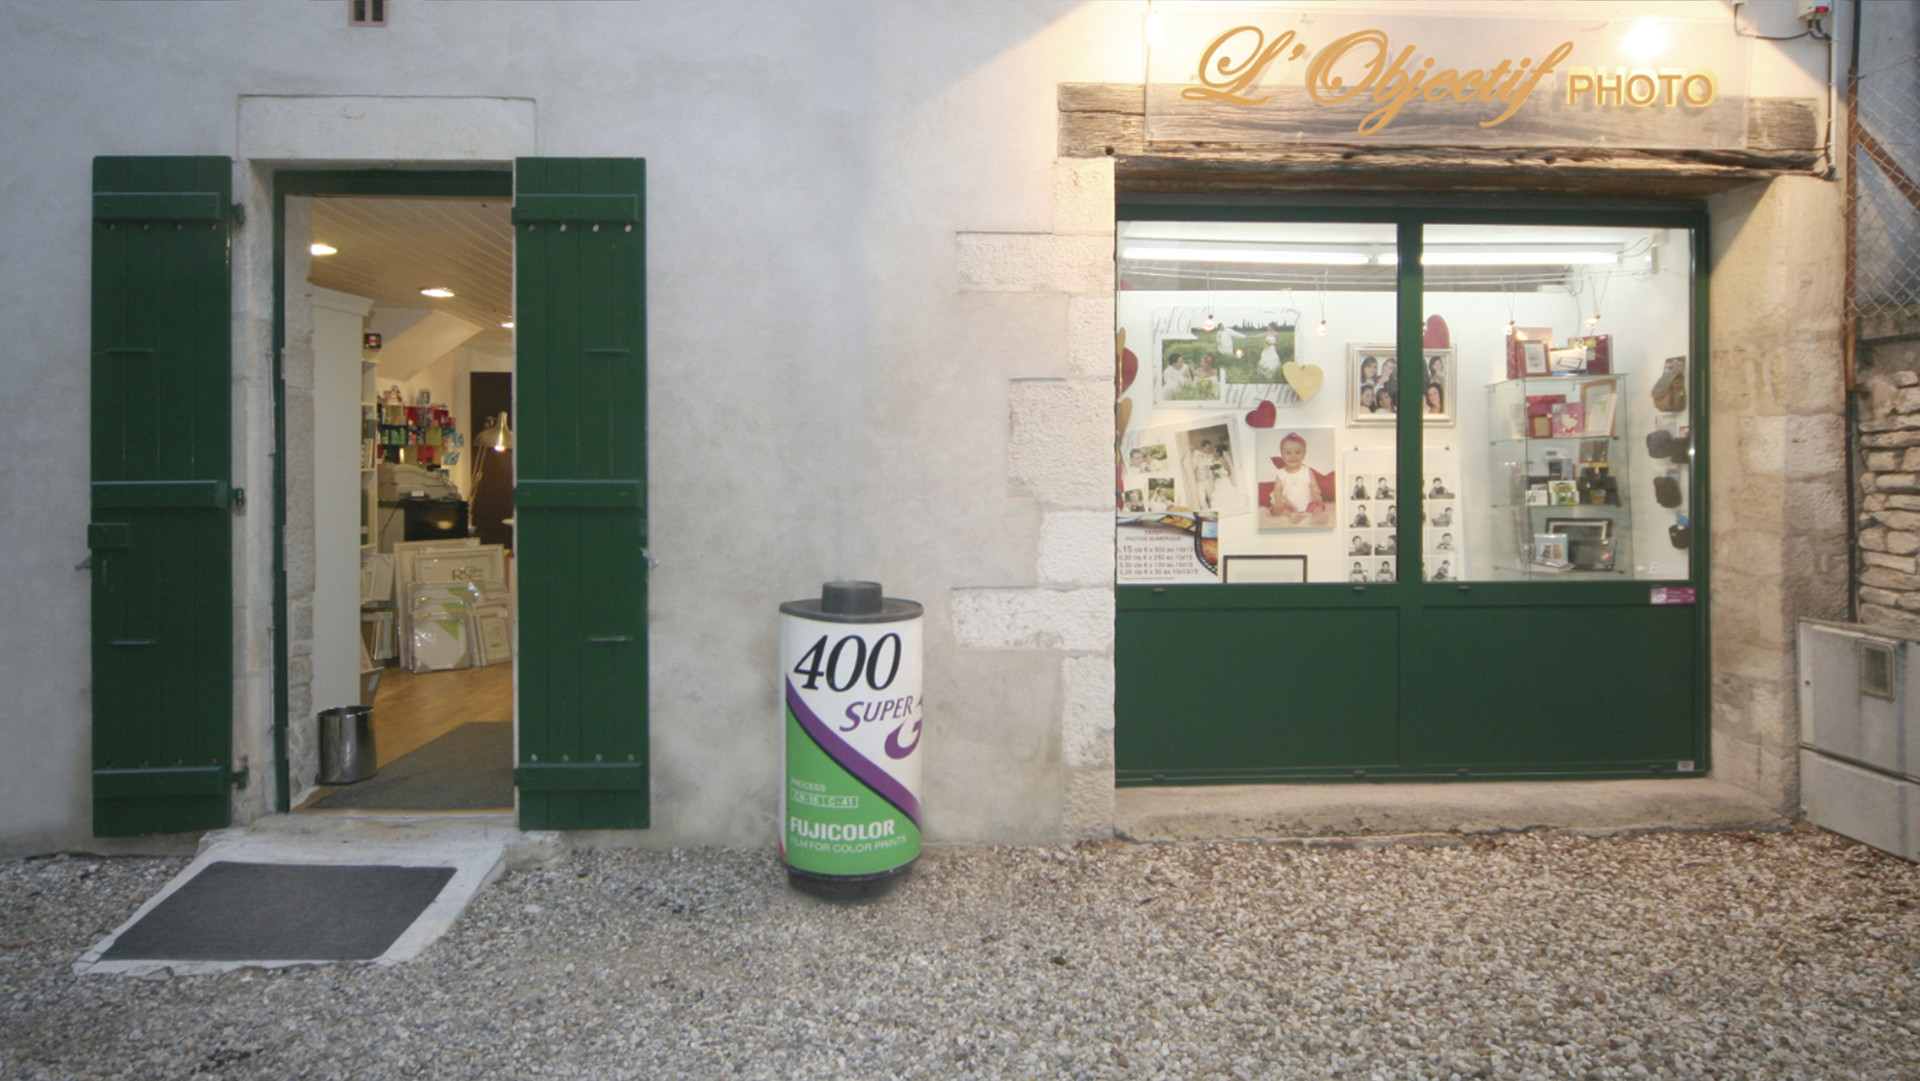 Boutique L'OBJECTIF PHOTO VIDEO - Chalon-sur-Saône